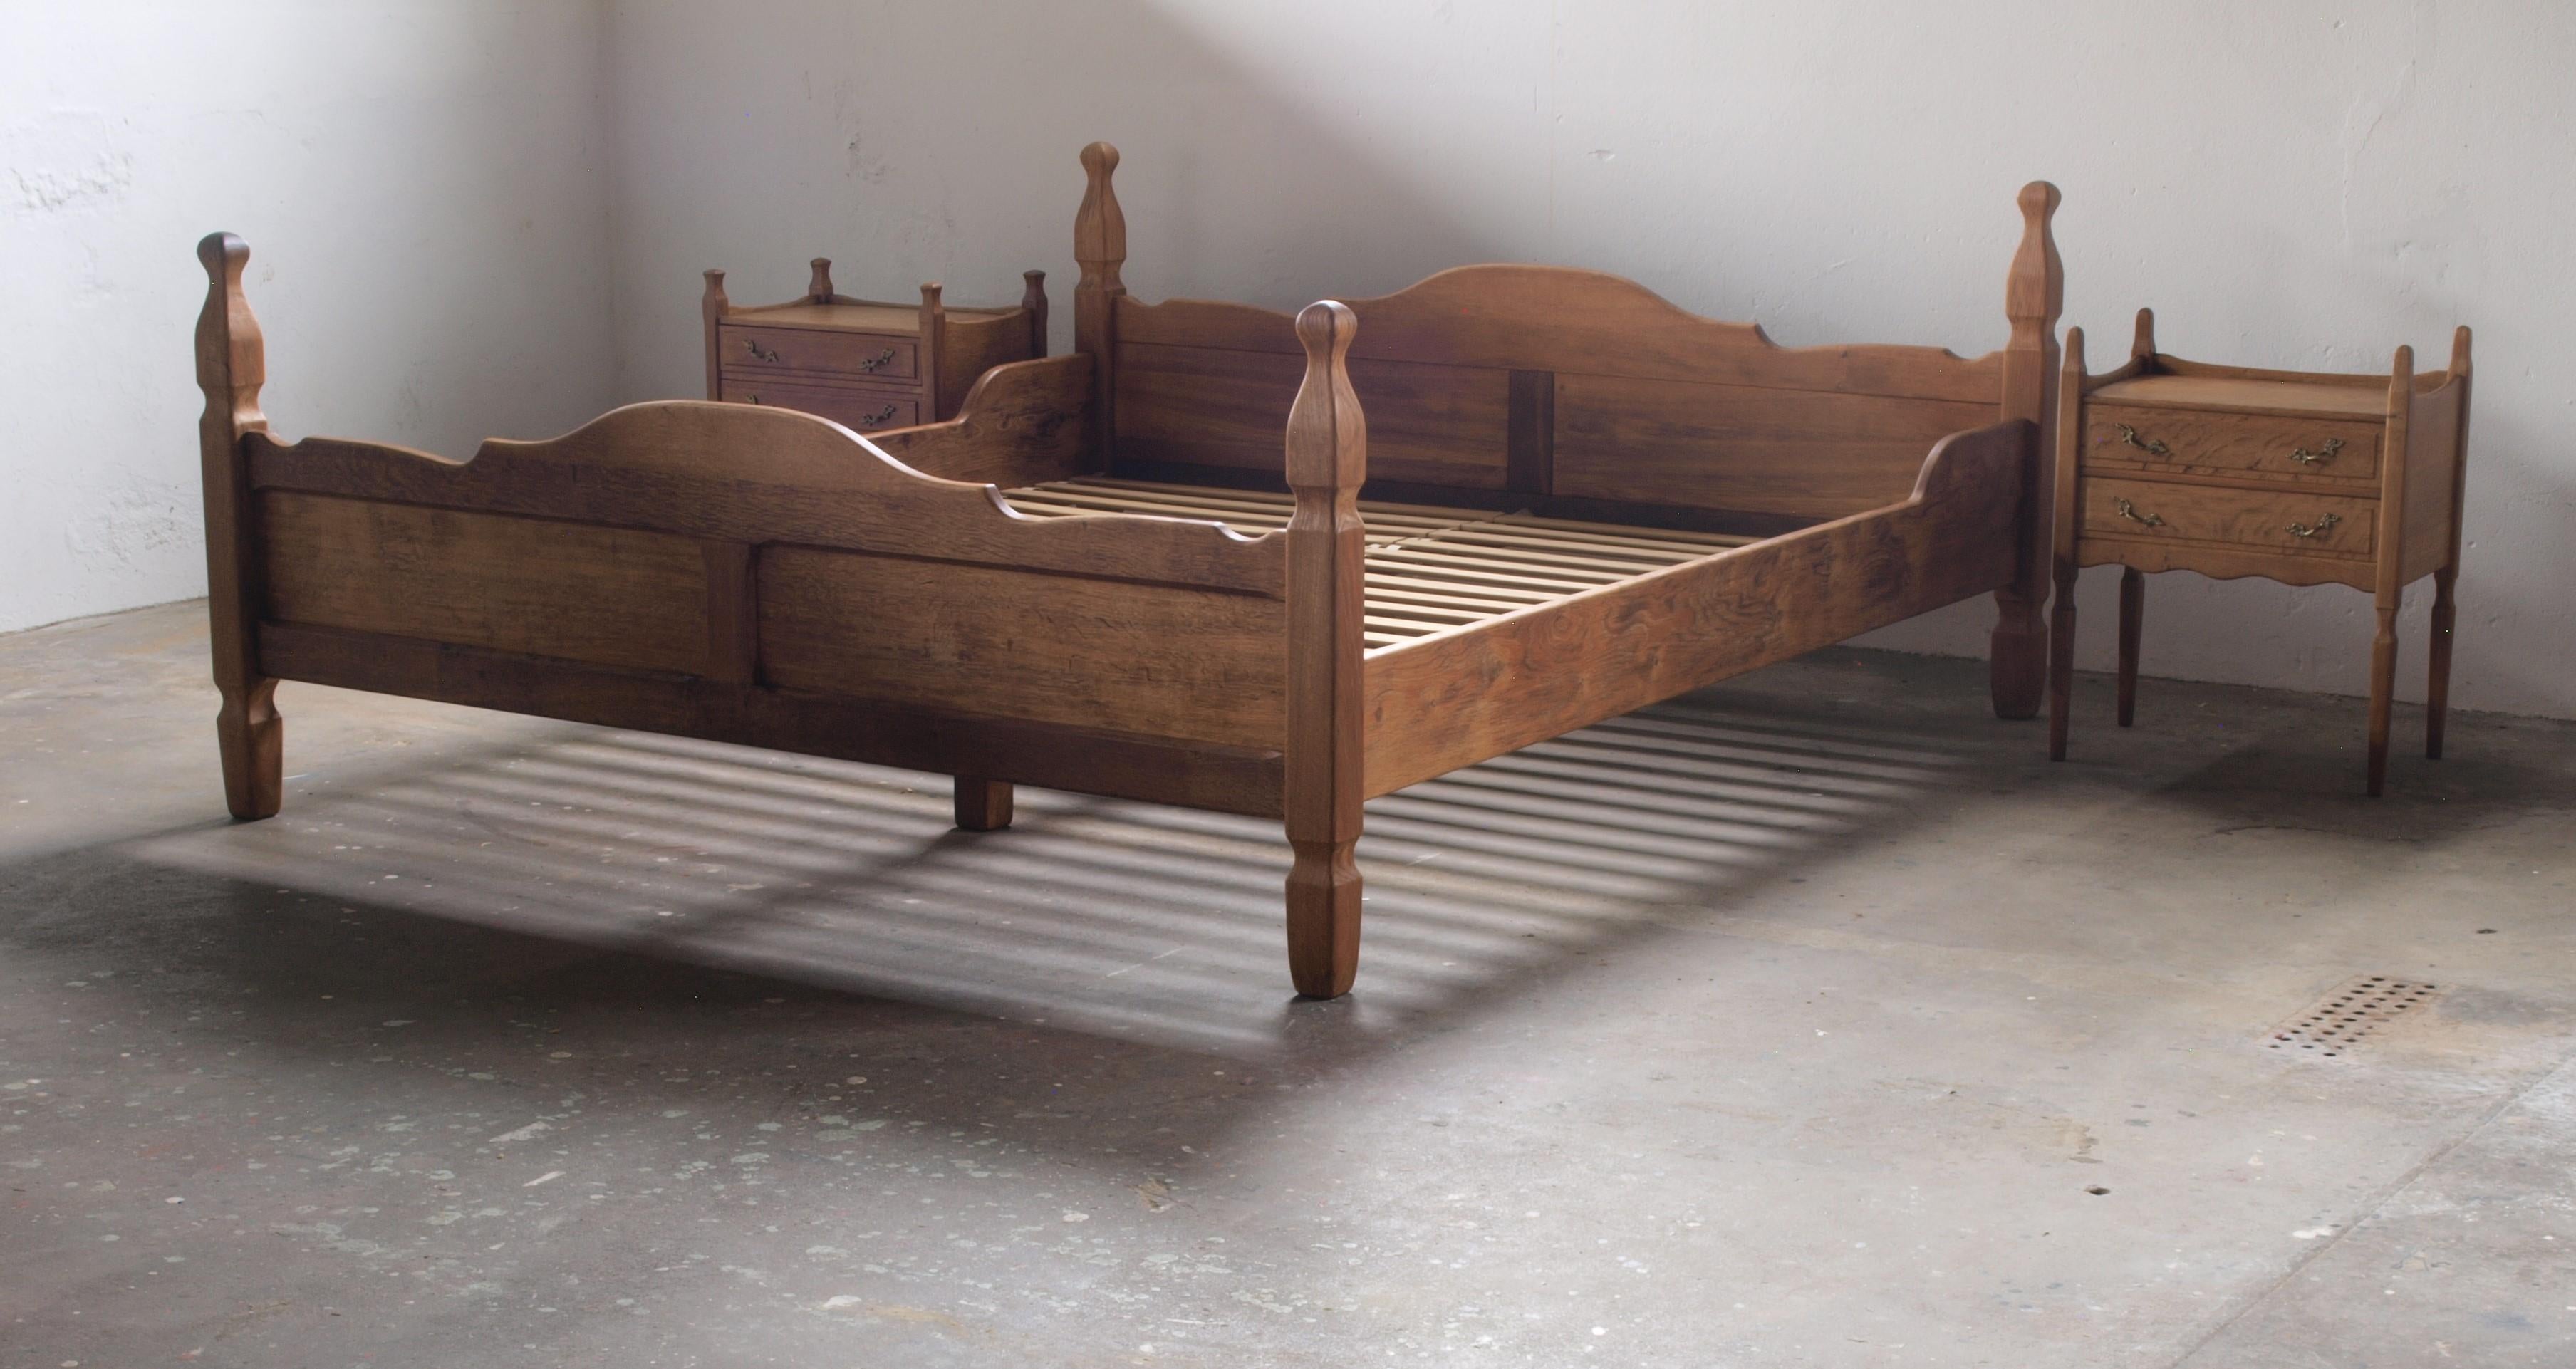 Ein seltenes Doppelbett aus massiver Eiche. Das Design wird Henning Kjærnulf für EG Møbler, Dänemark, zugeschrieben und entstand in den 1960er Jahren. Ein skulpturales Stück, das Barock und Moderne verbindet.

Messen Sie 39 cm vom Boden bis zur